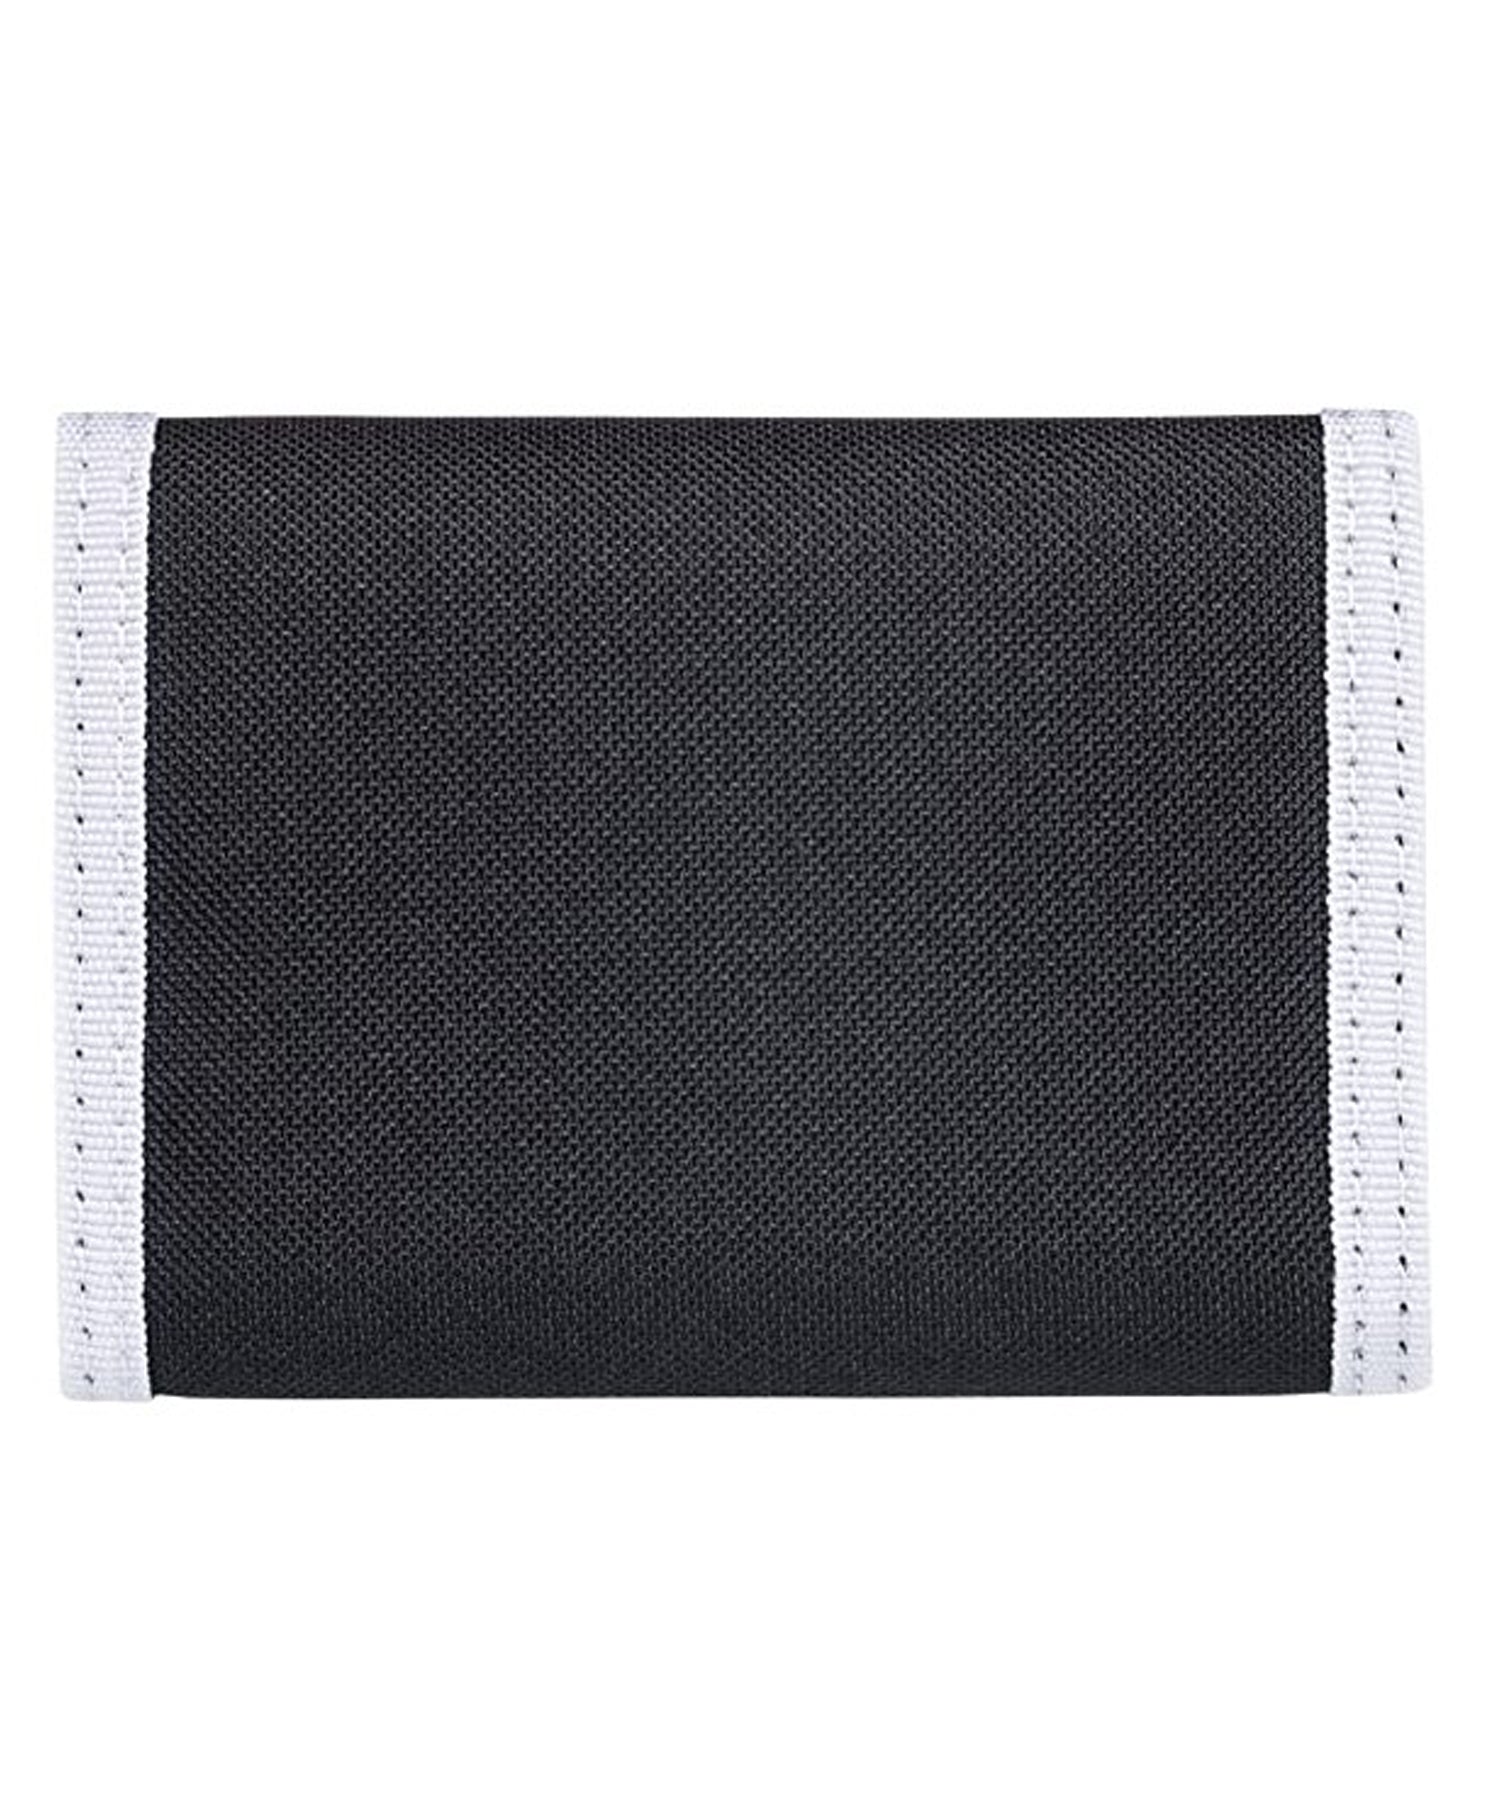 element-cartera tri-fold-army-billetera de tres hojas color-negro-ribete-blanco-loneta de poliéster-logo element en el centro.